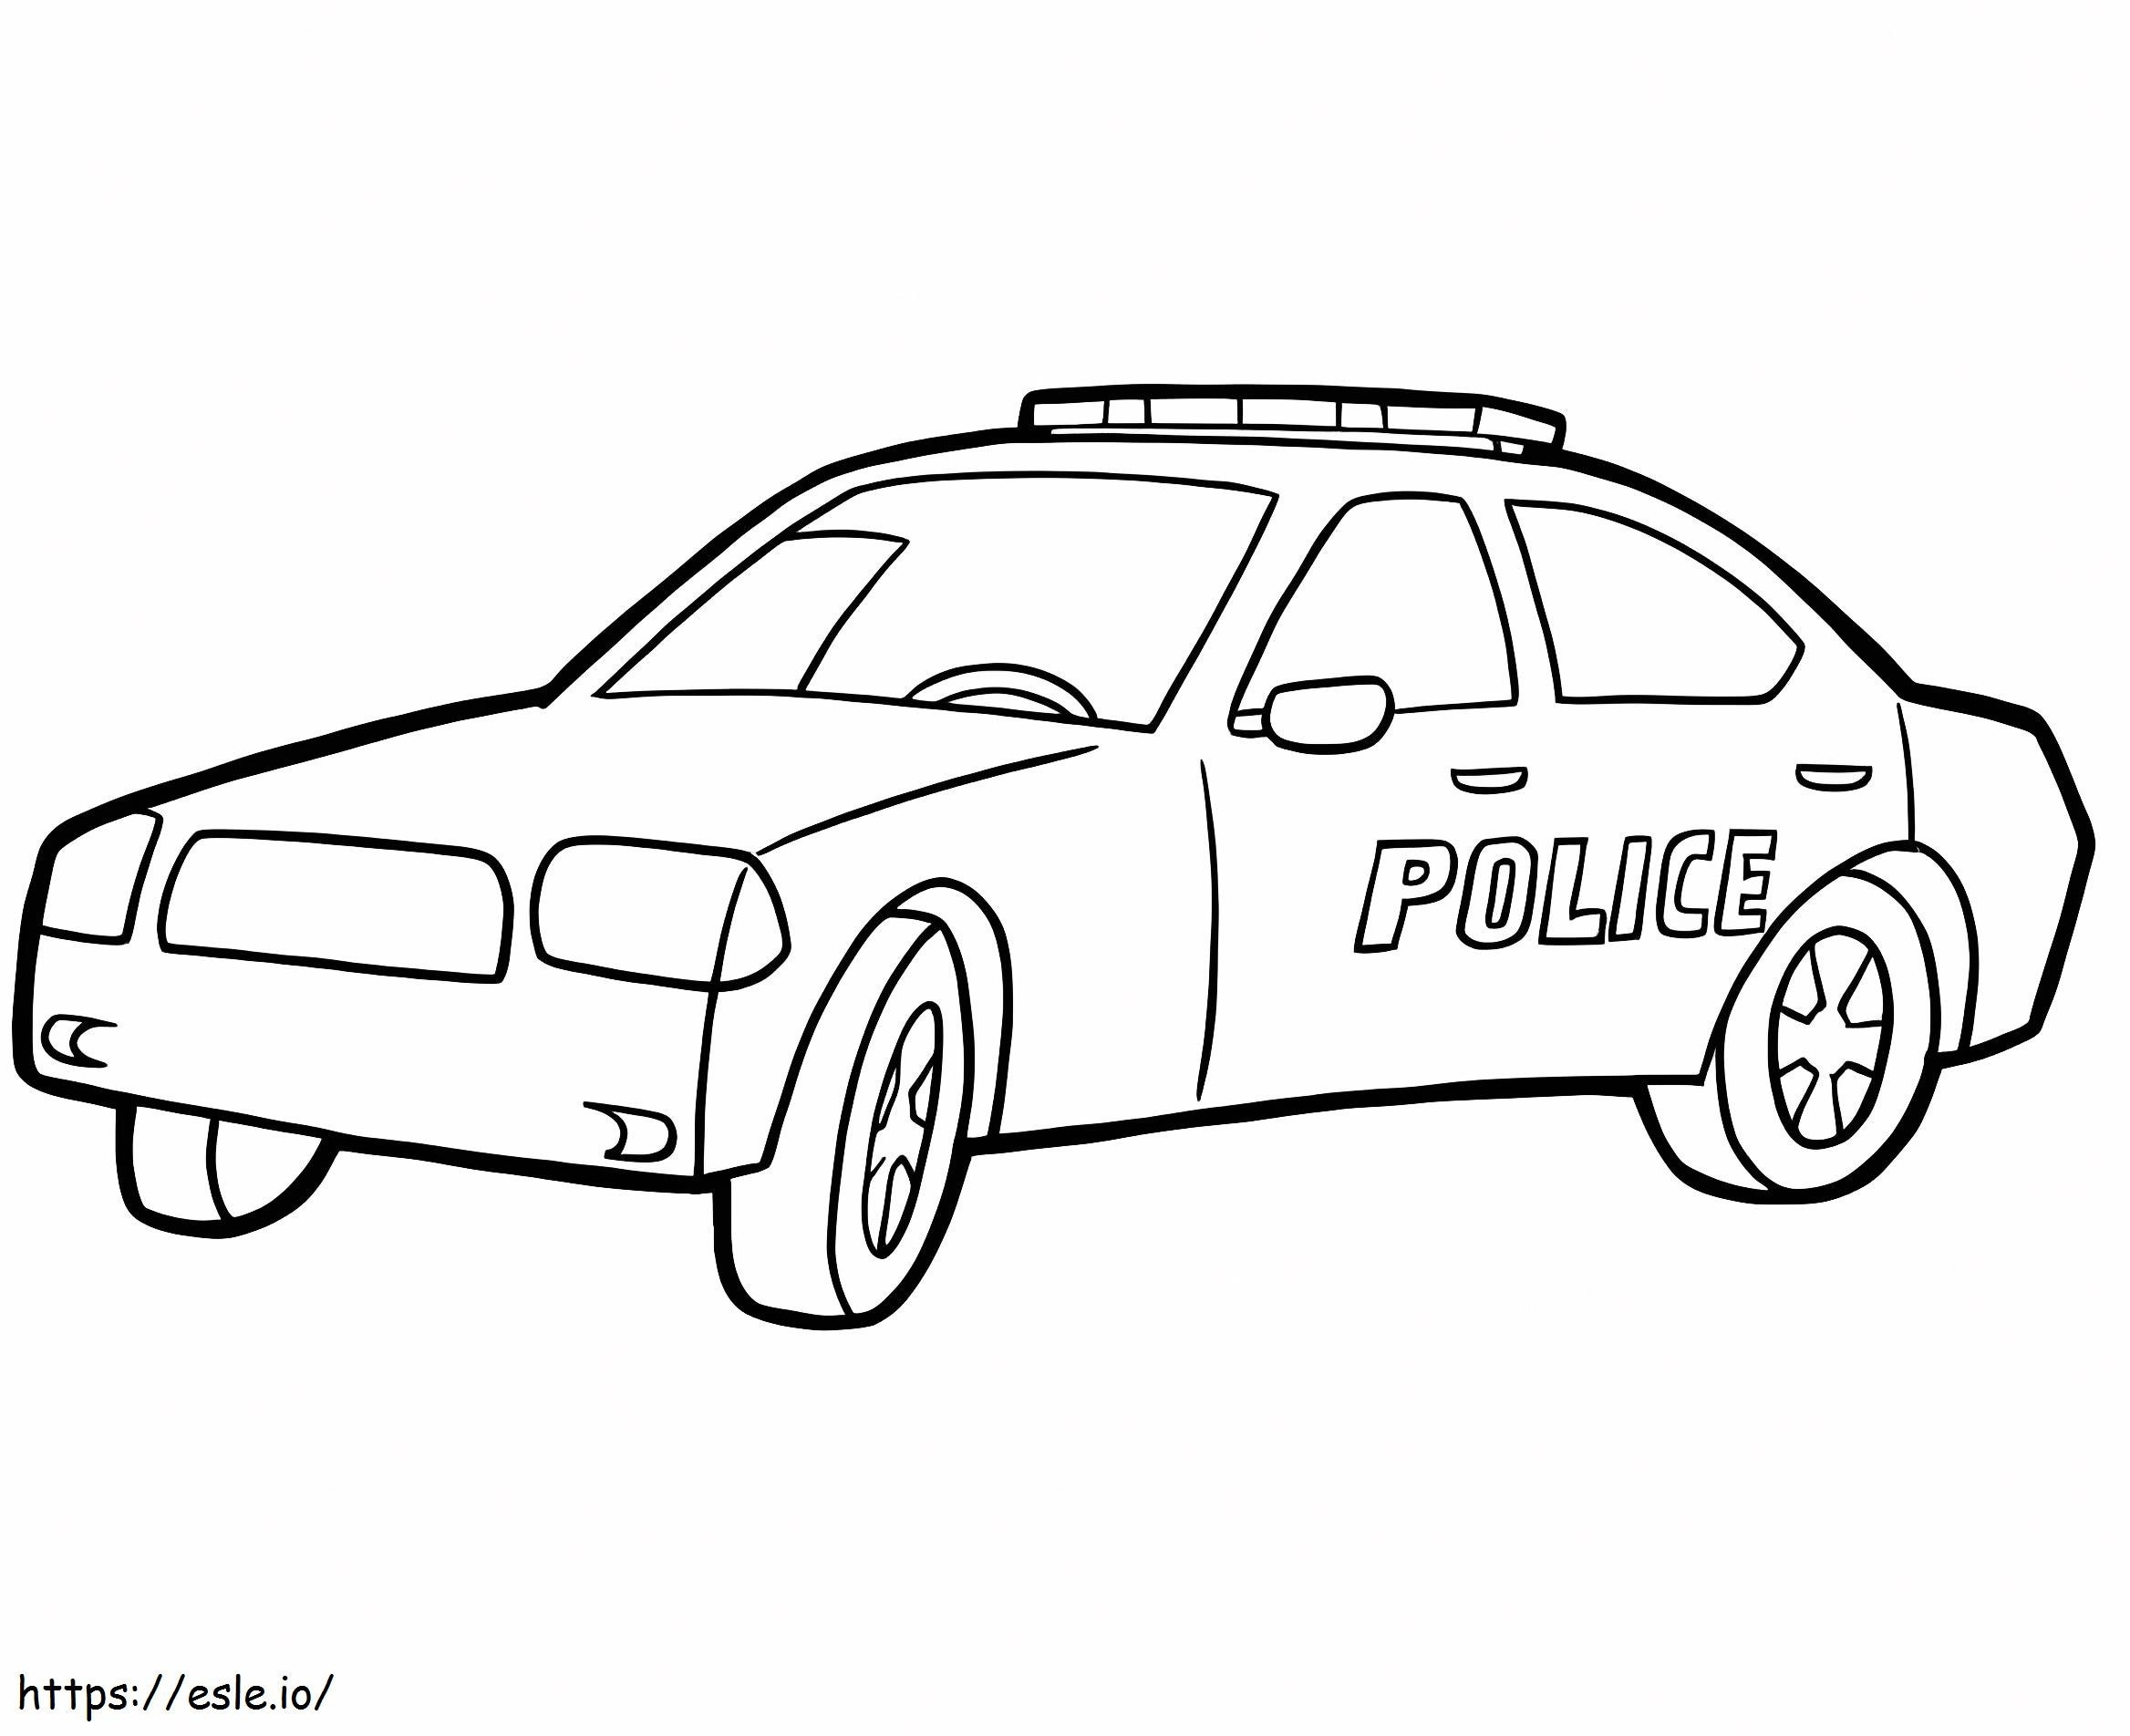 Ücretsiz Yazdırılabilir Polis Arabası boyama